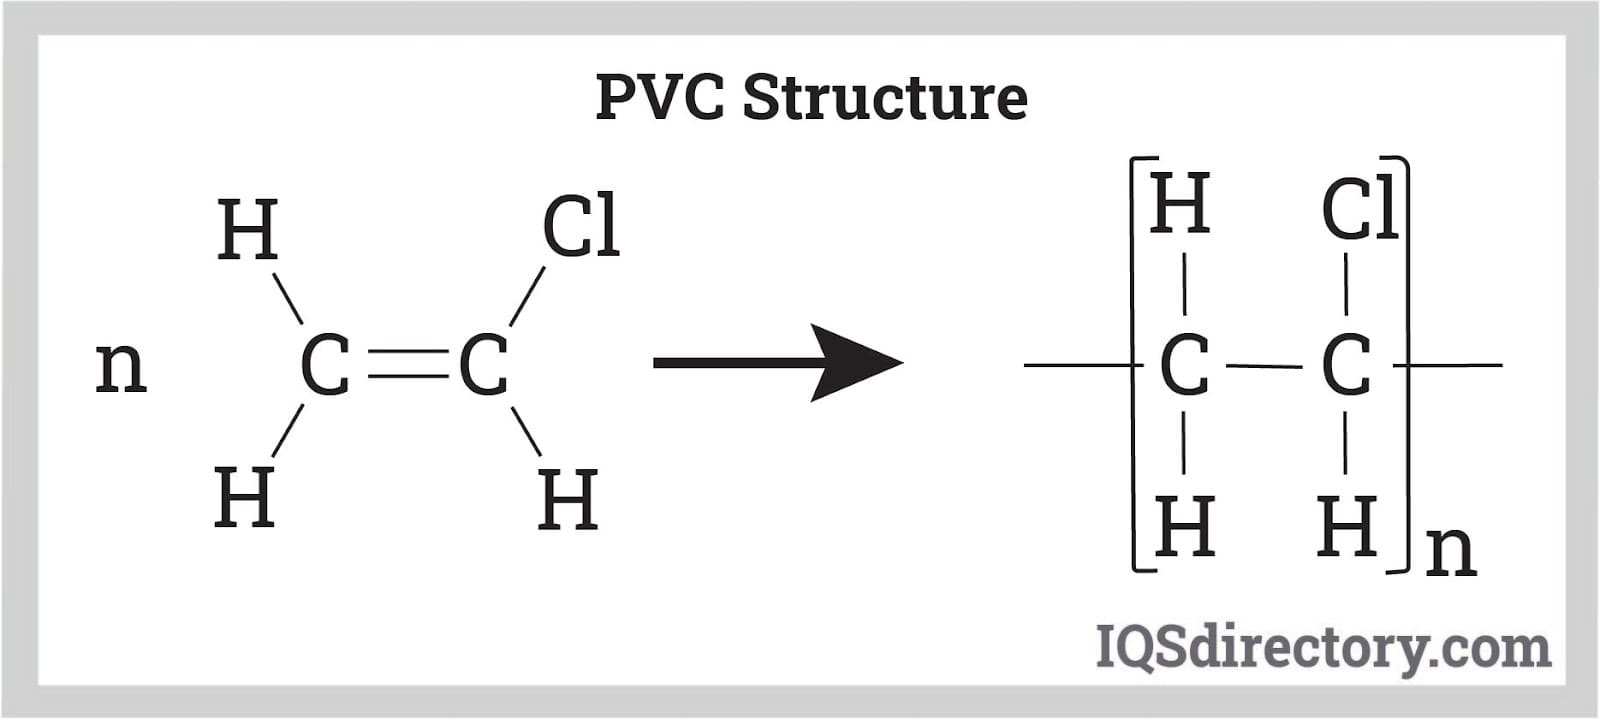 PVC Structure